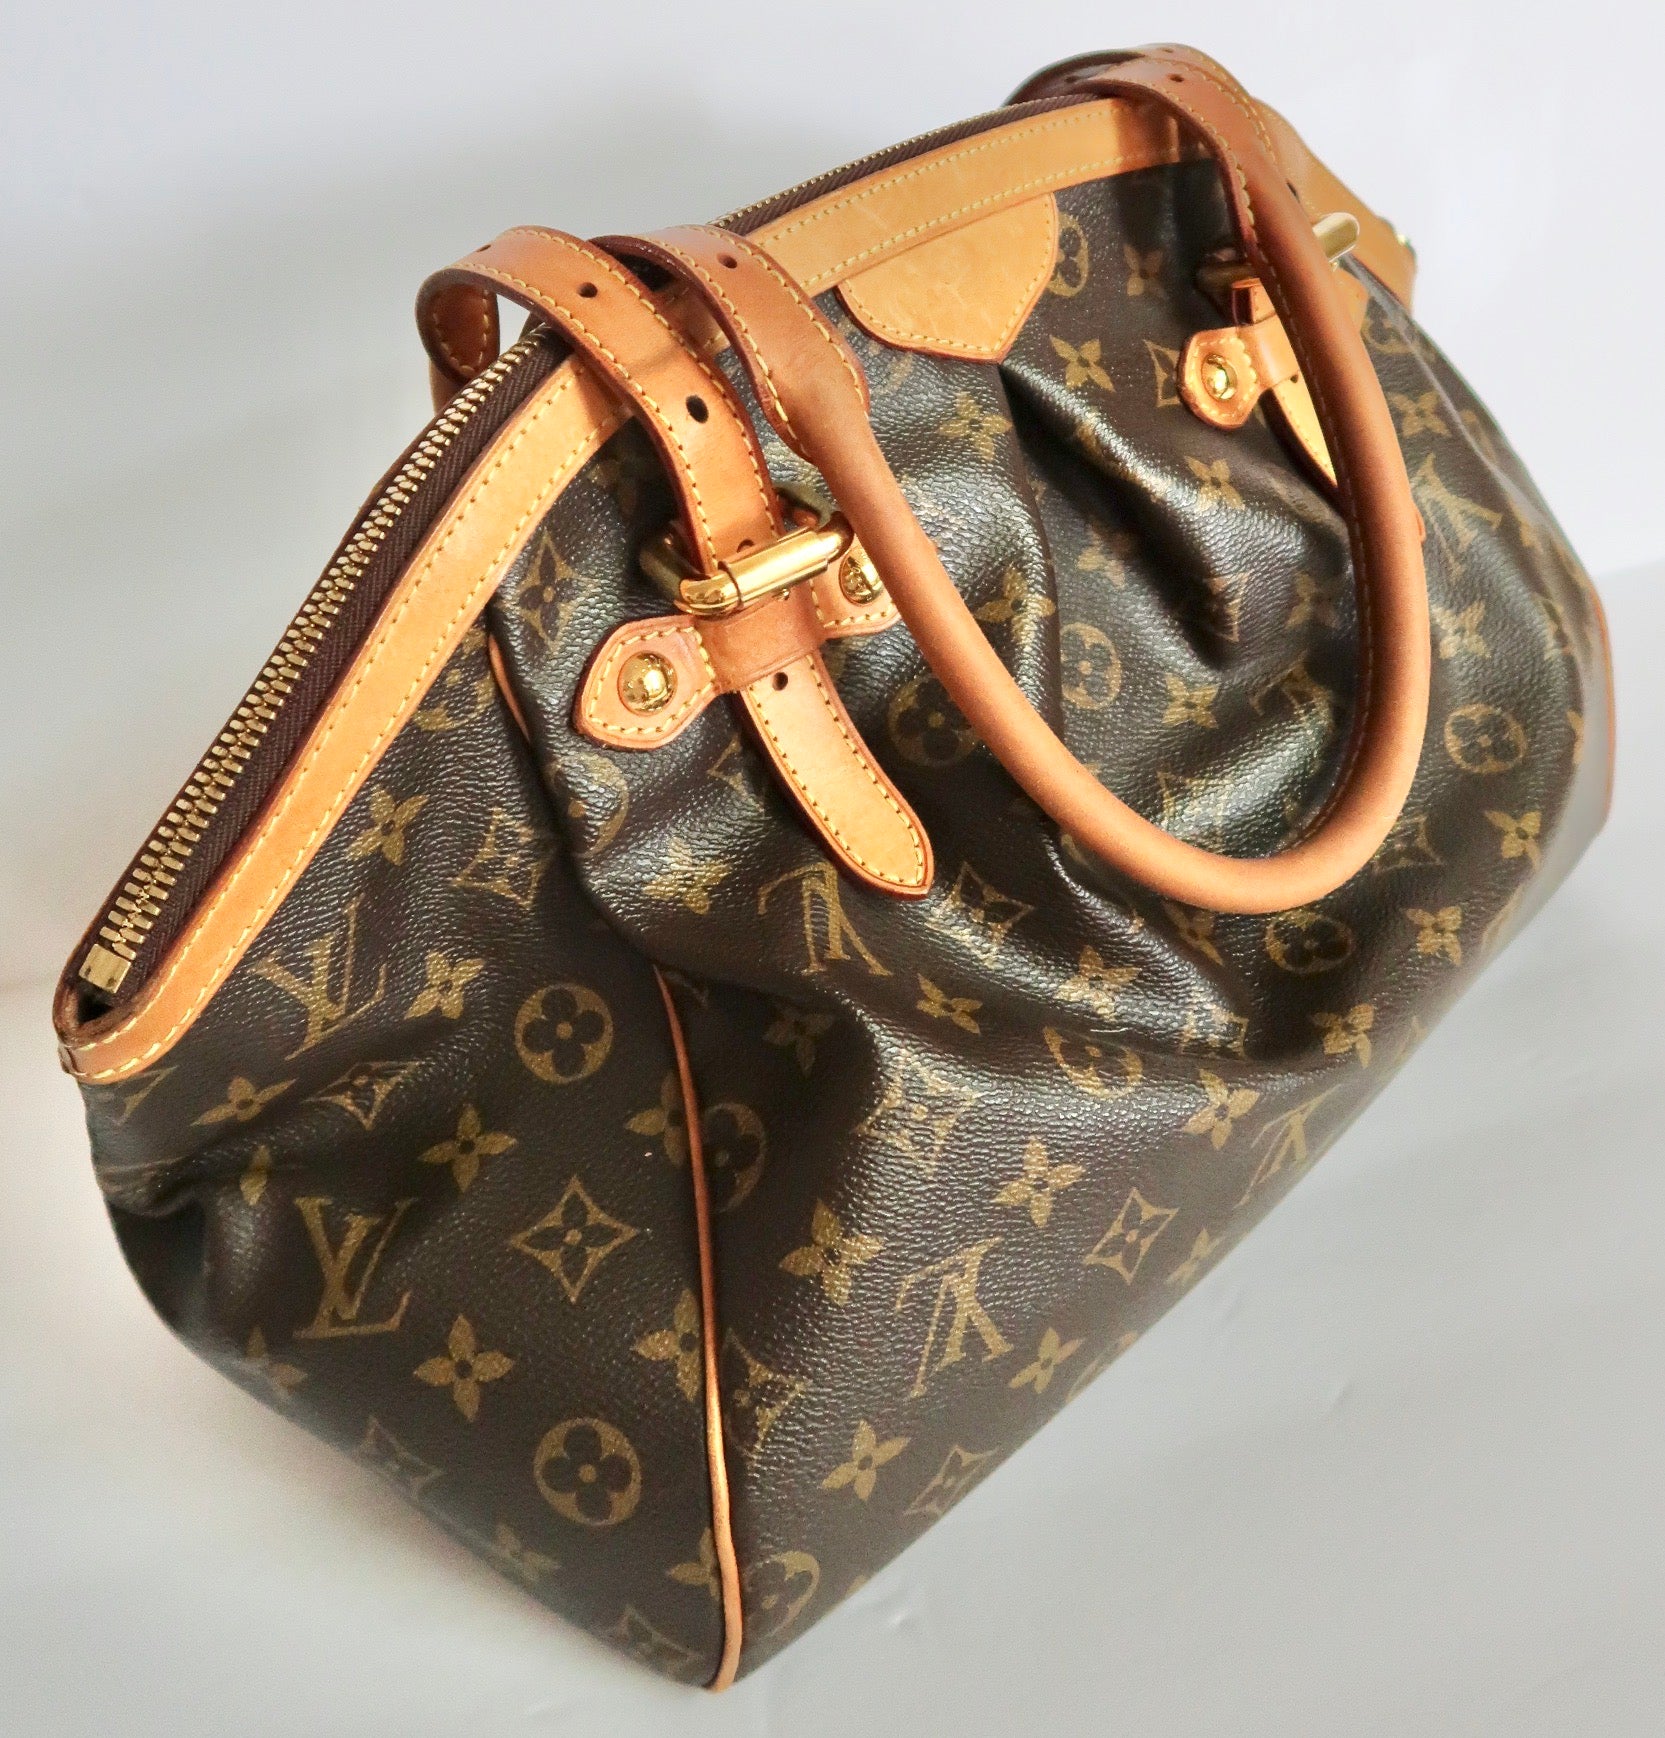 Louis Vuitton, Bags, Authentic Louis Vuitton Tivoli Gm